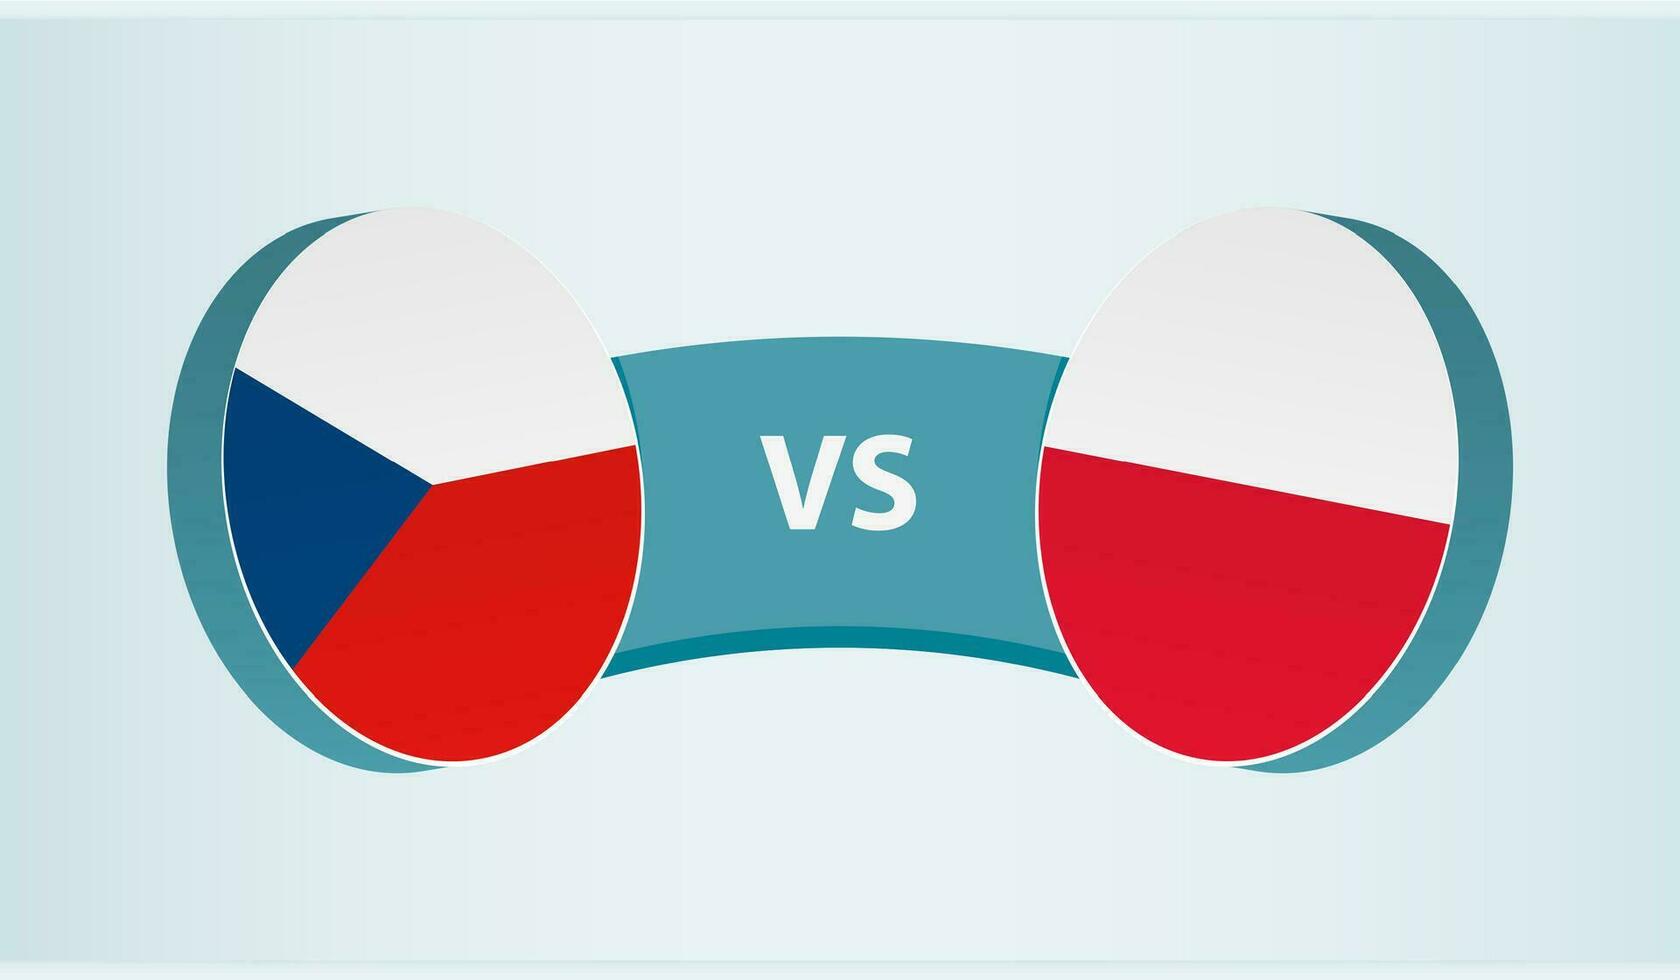 Czech Republic versus Poland, team sports competition concept. vector